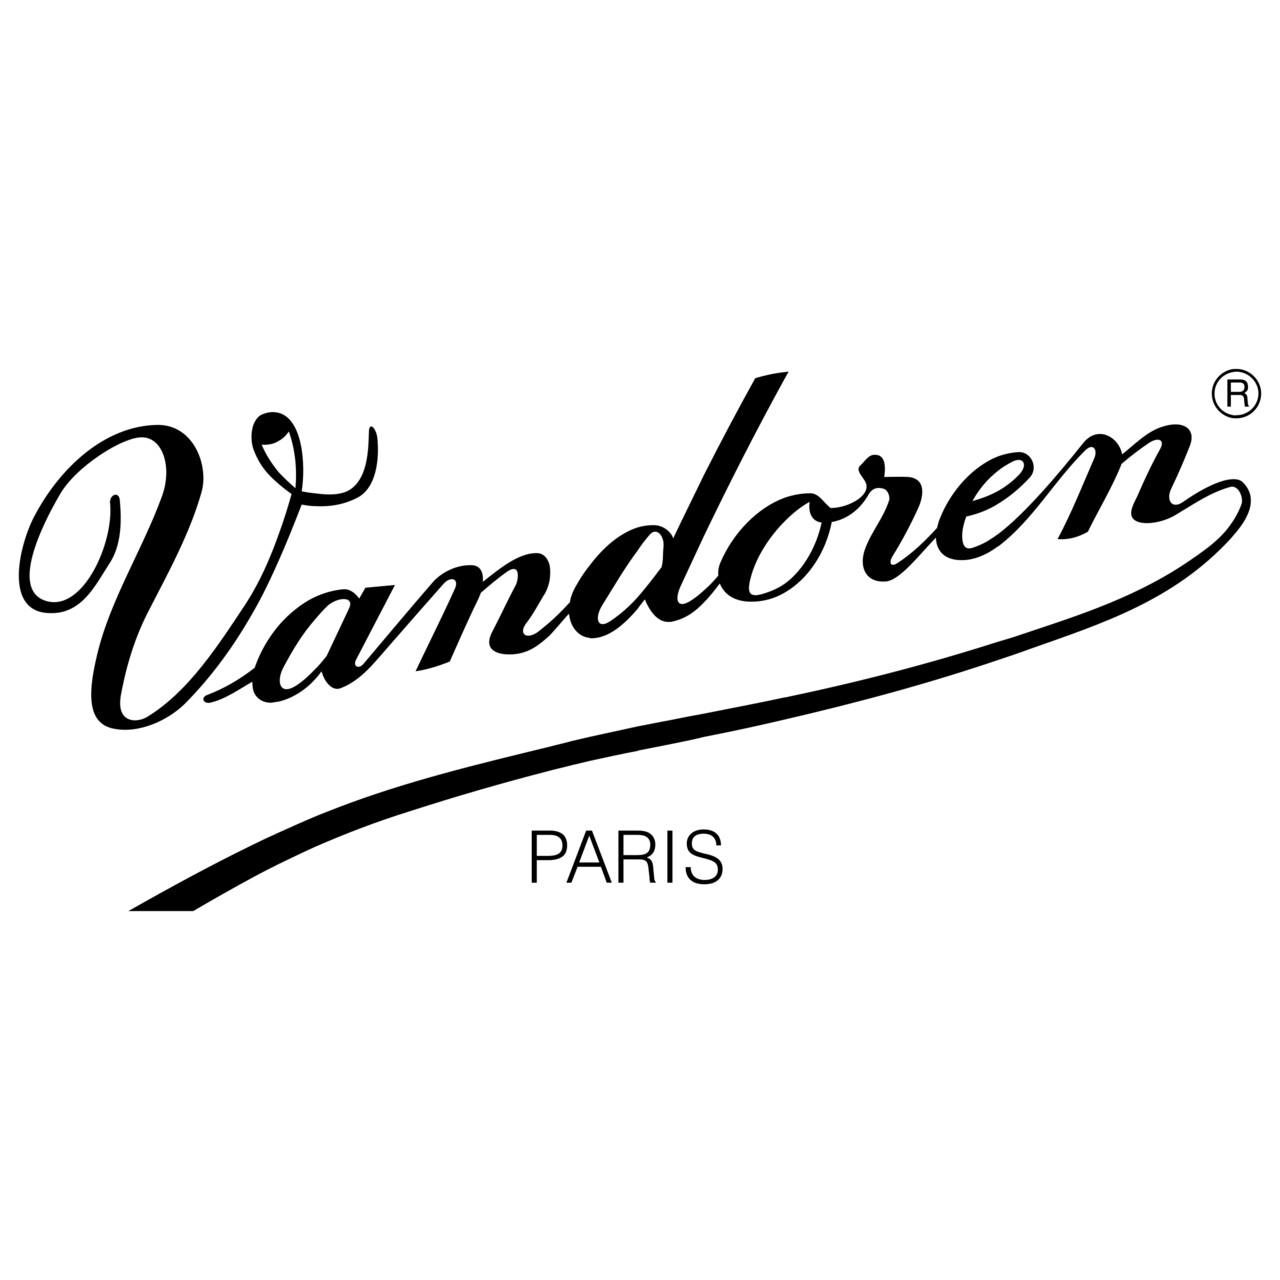 Logo Vandoren